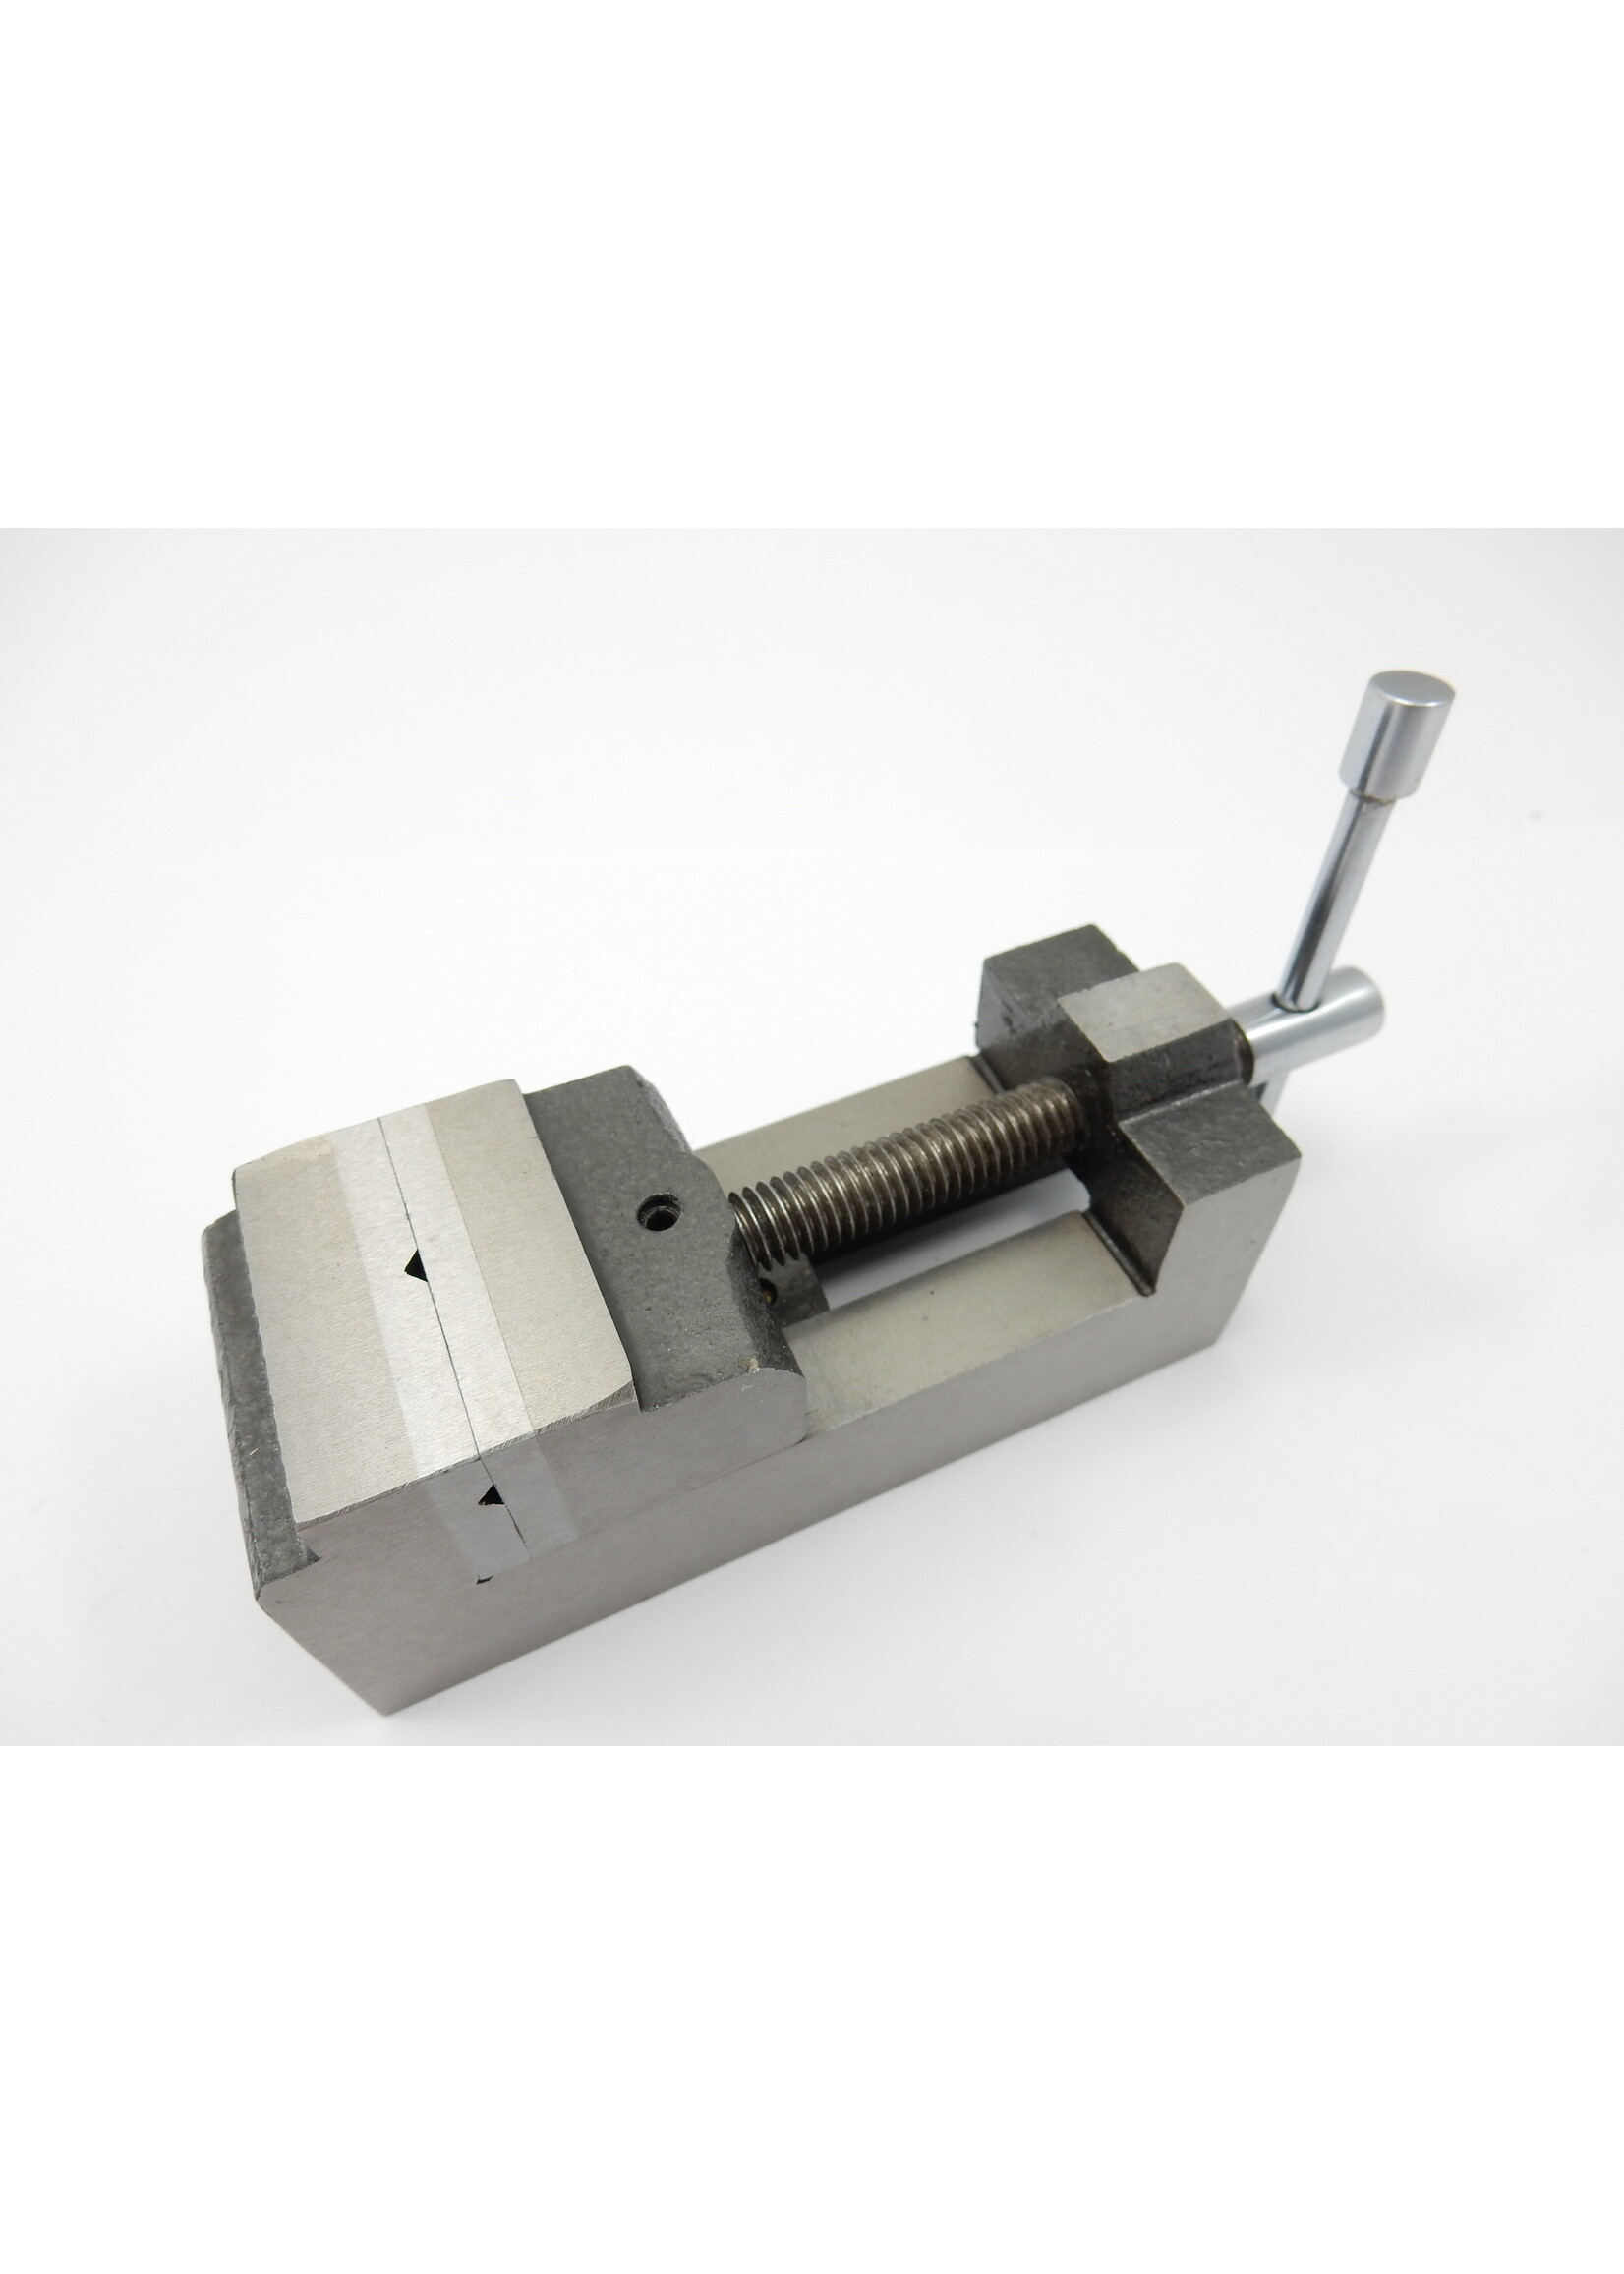 Mini drill press vice / Machine vice